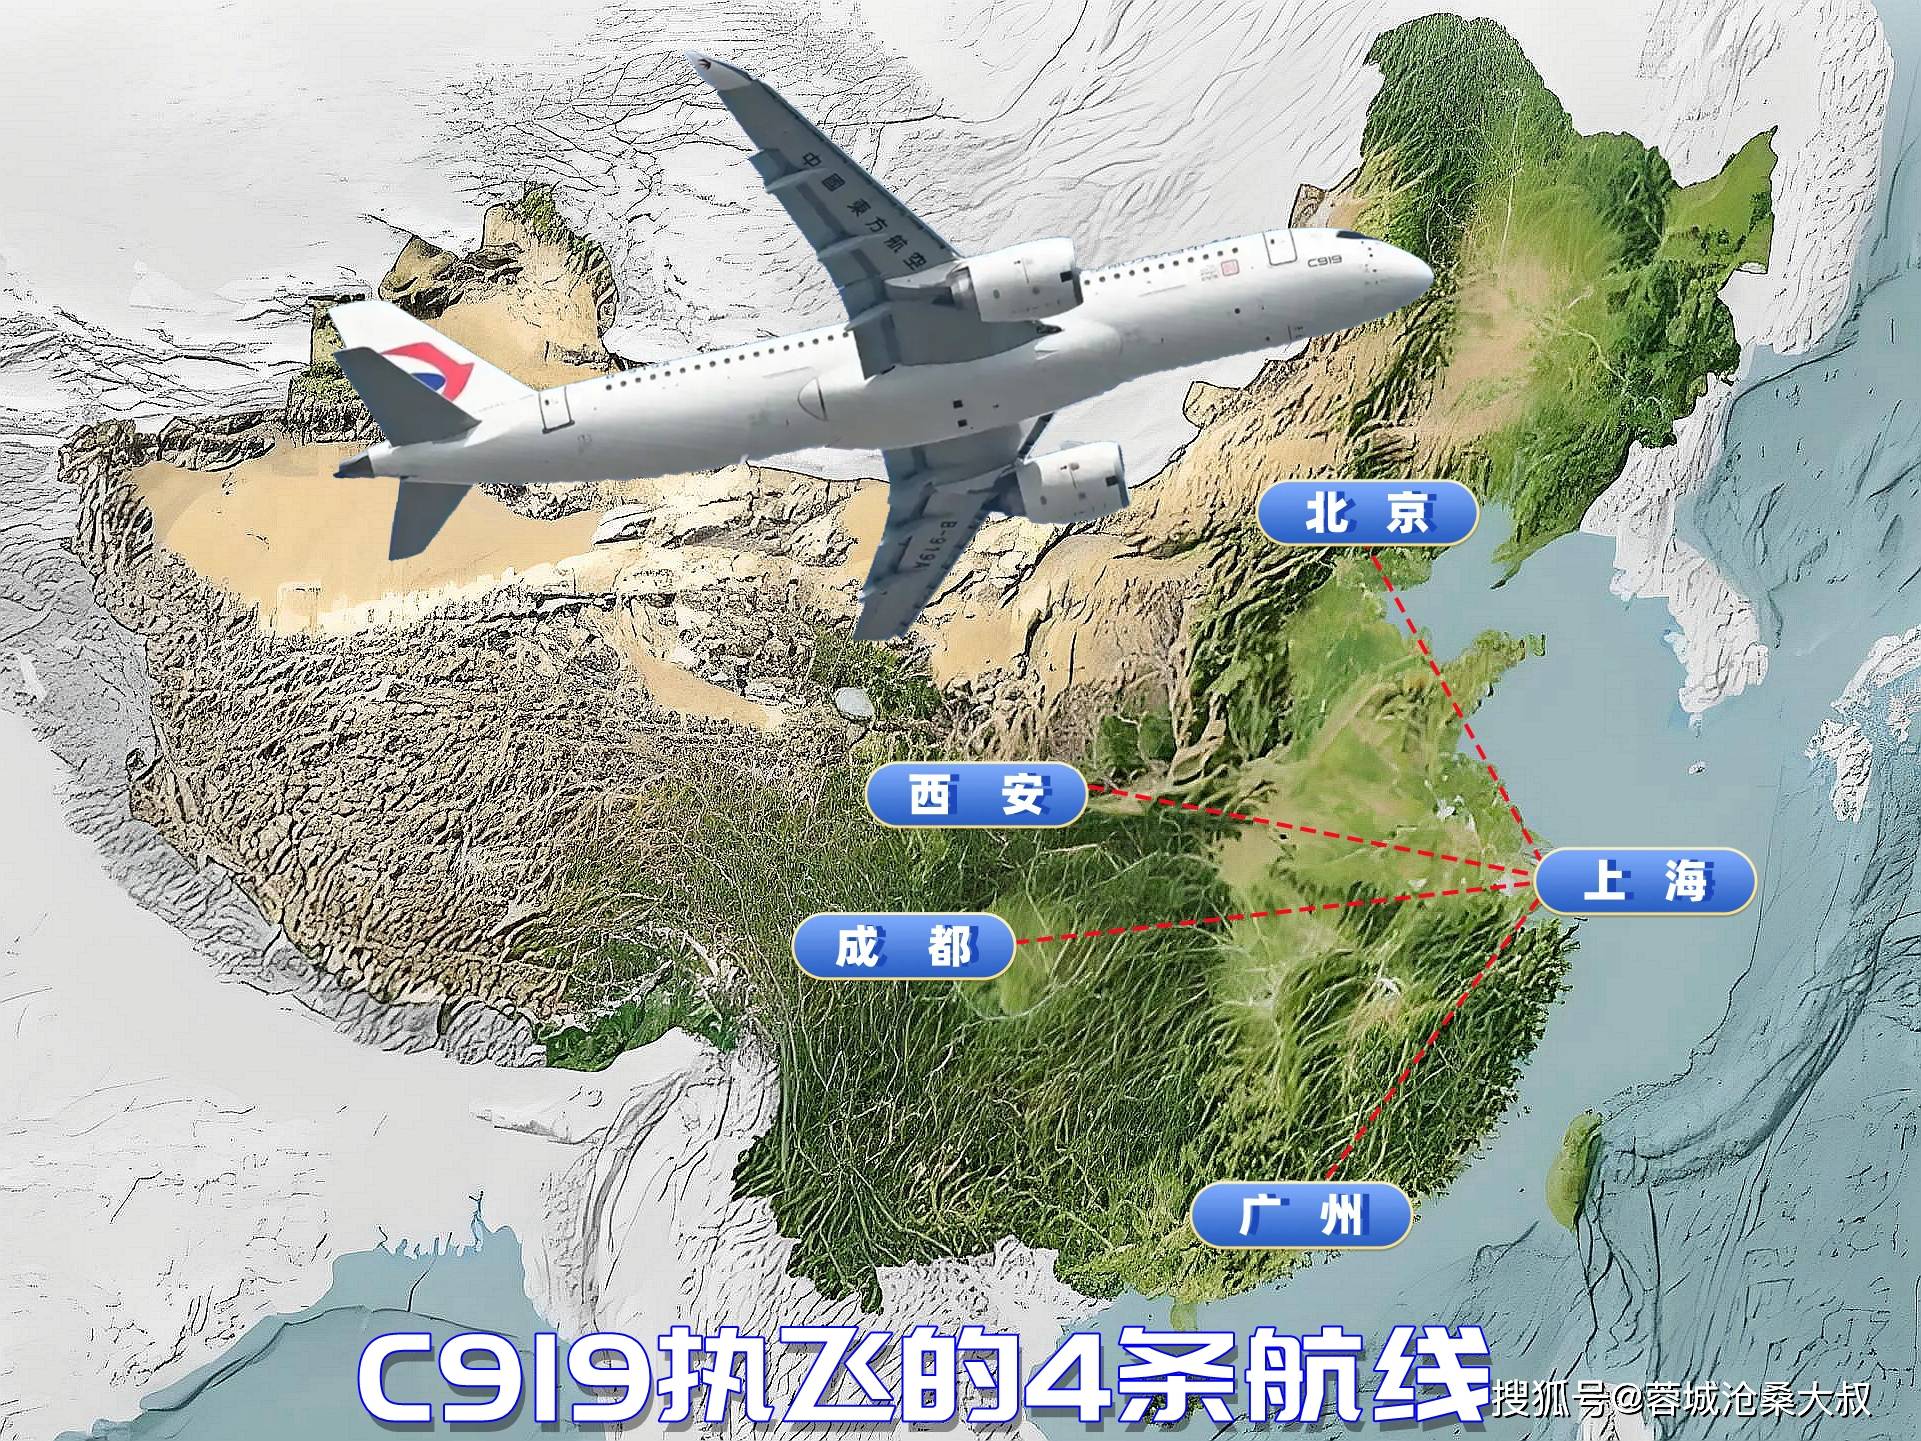 东航c919的第四条商业航线将开通:6月1日从上海飞广州往返